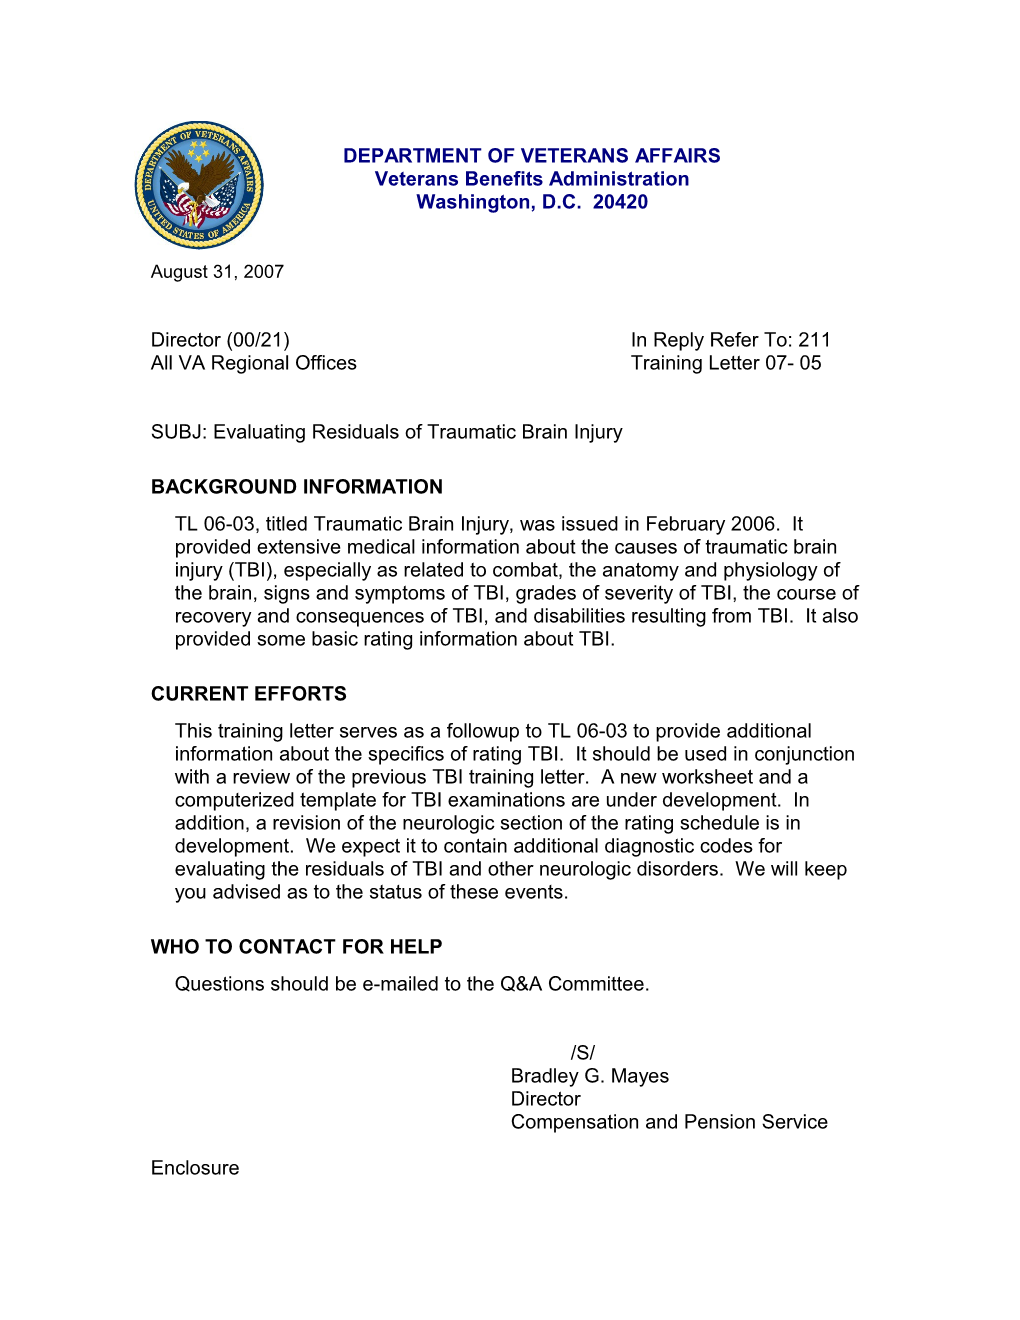 All VA Regional Officestraining Letter 07- 05